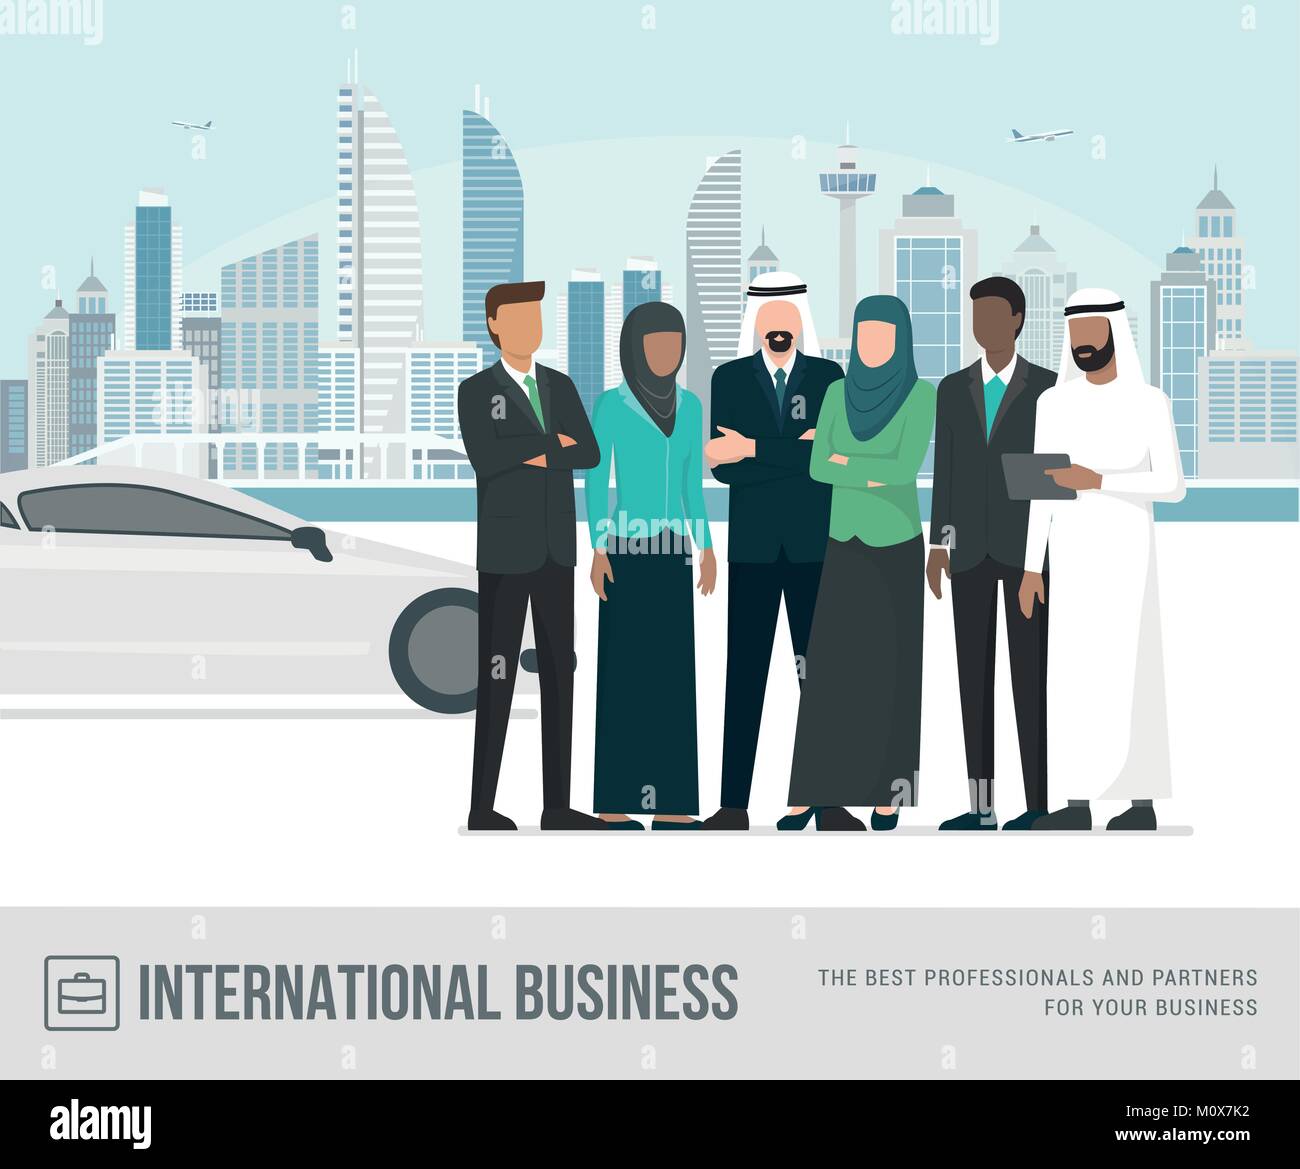 D'affaires arabes musulmans posing together, Metropolis et à la voiture de luxe sur l'arrière-plan Illustration de Vecteur